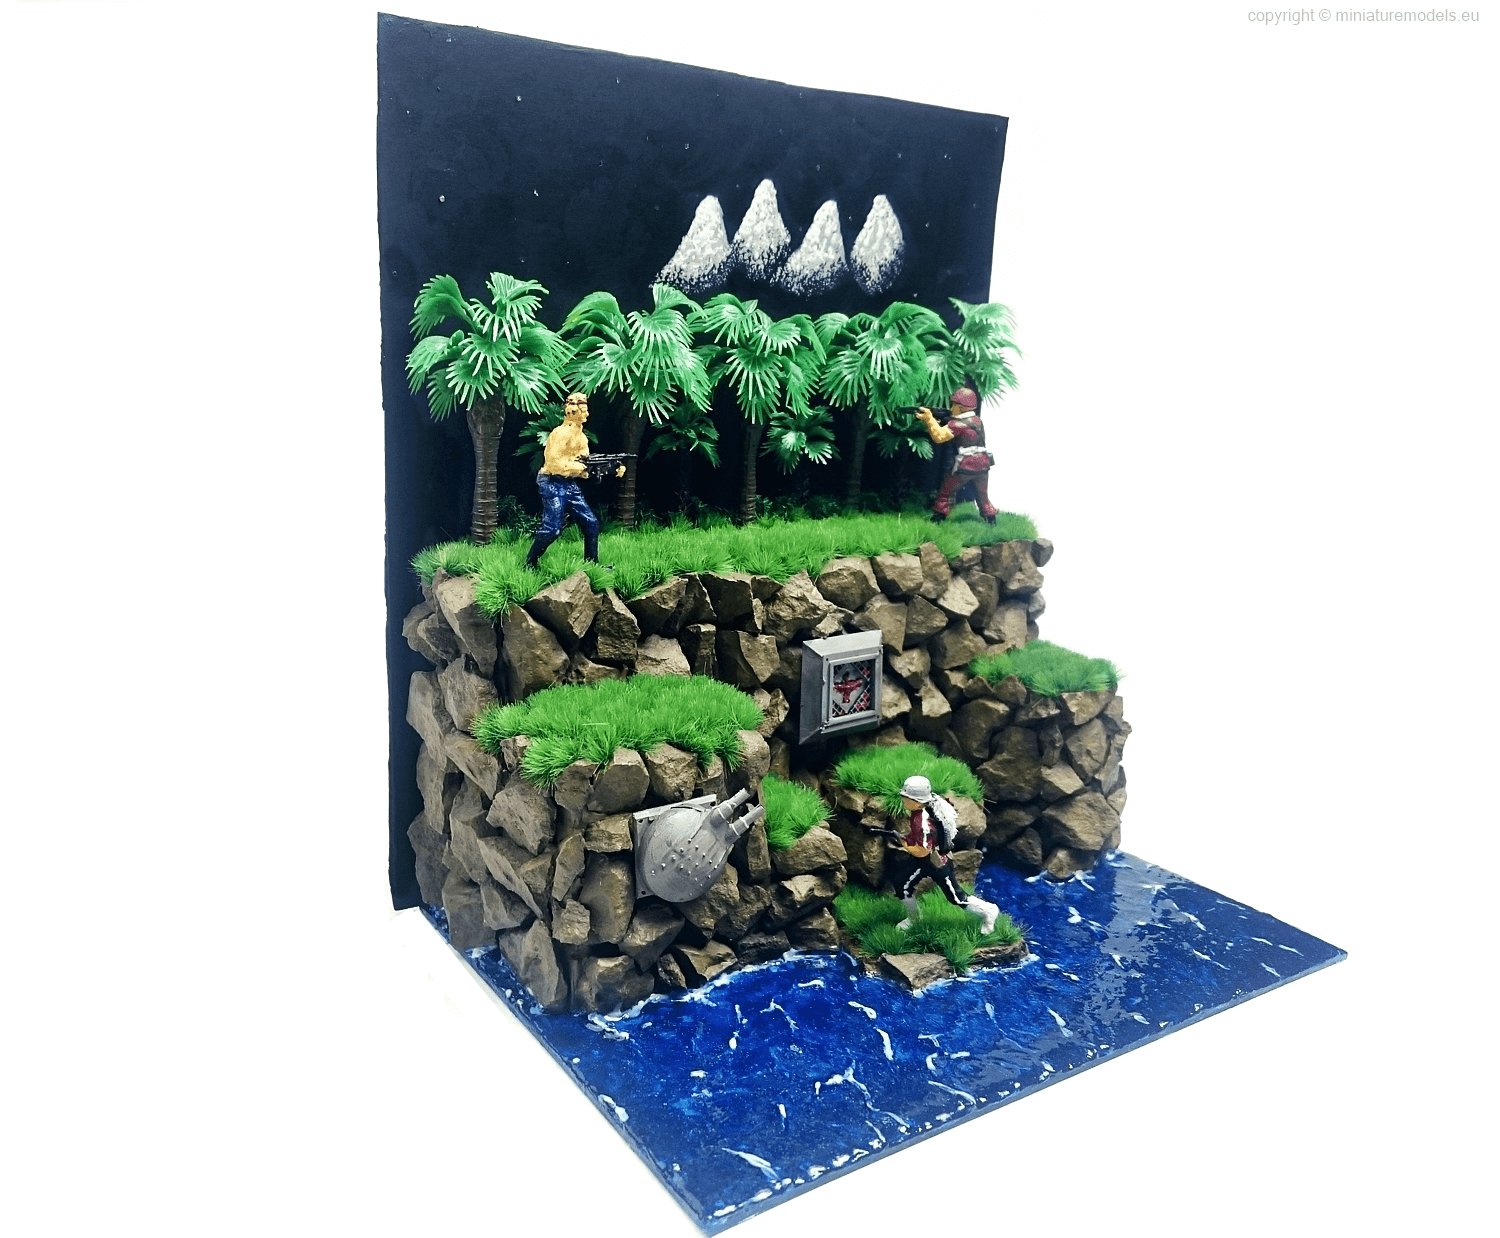 Handmade diorama of NES Contra game